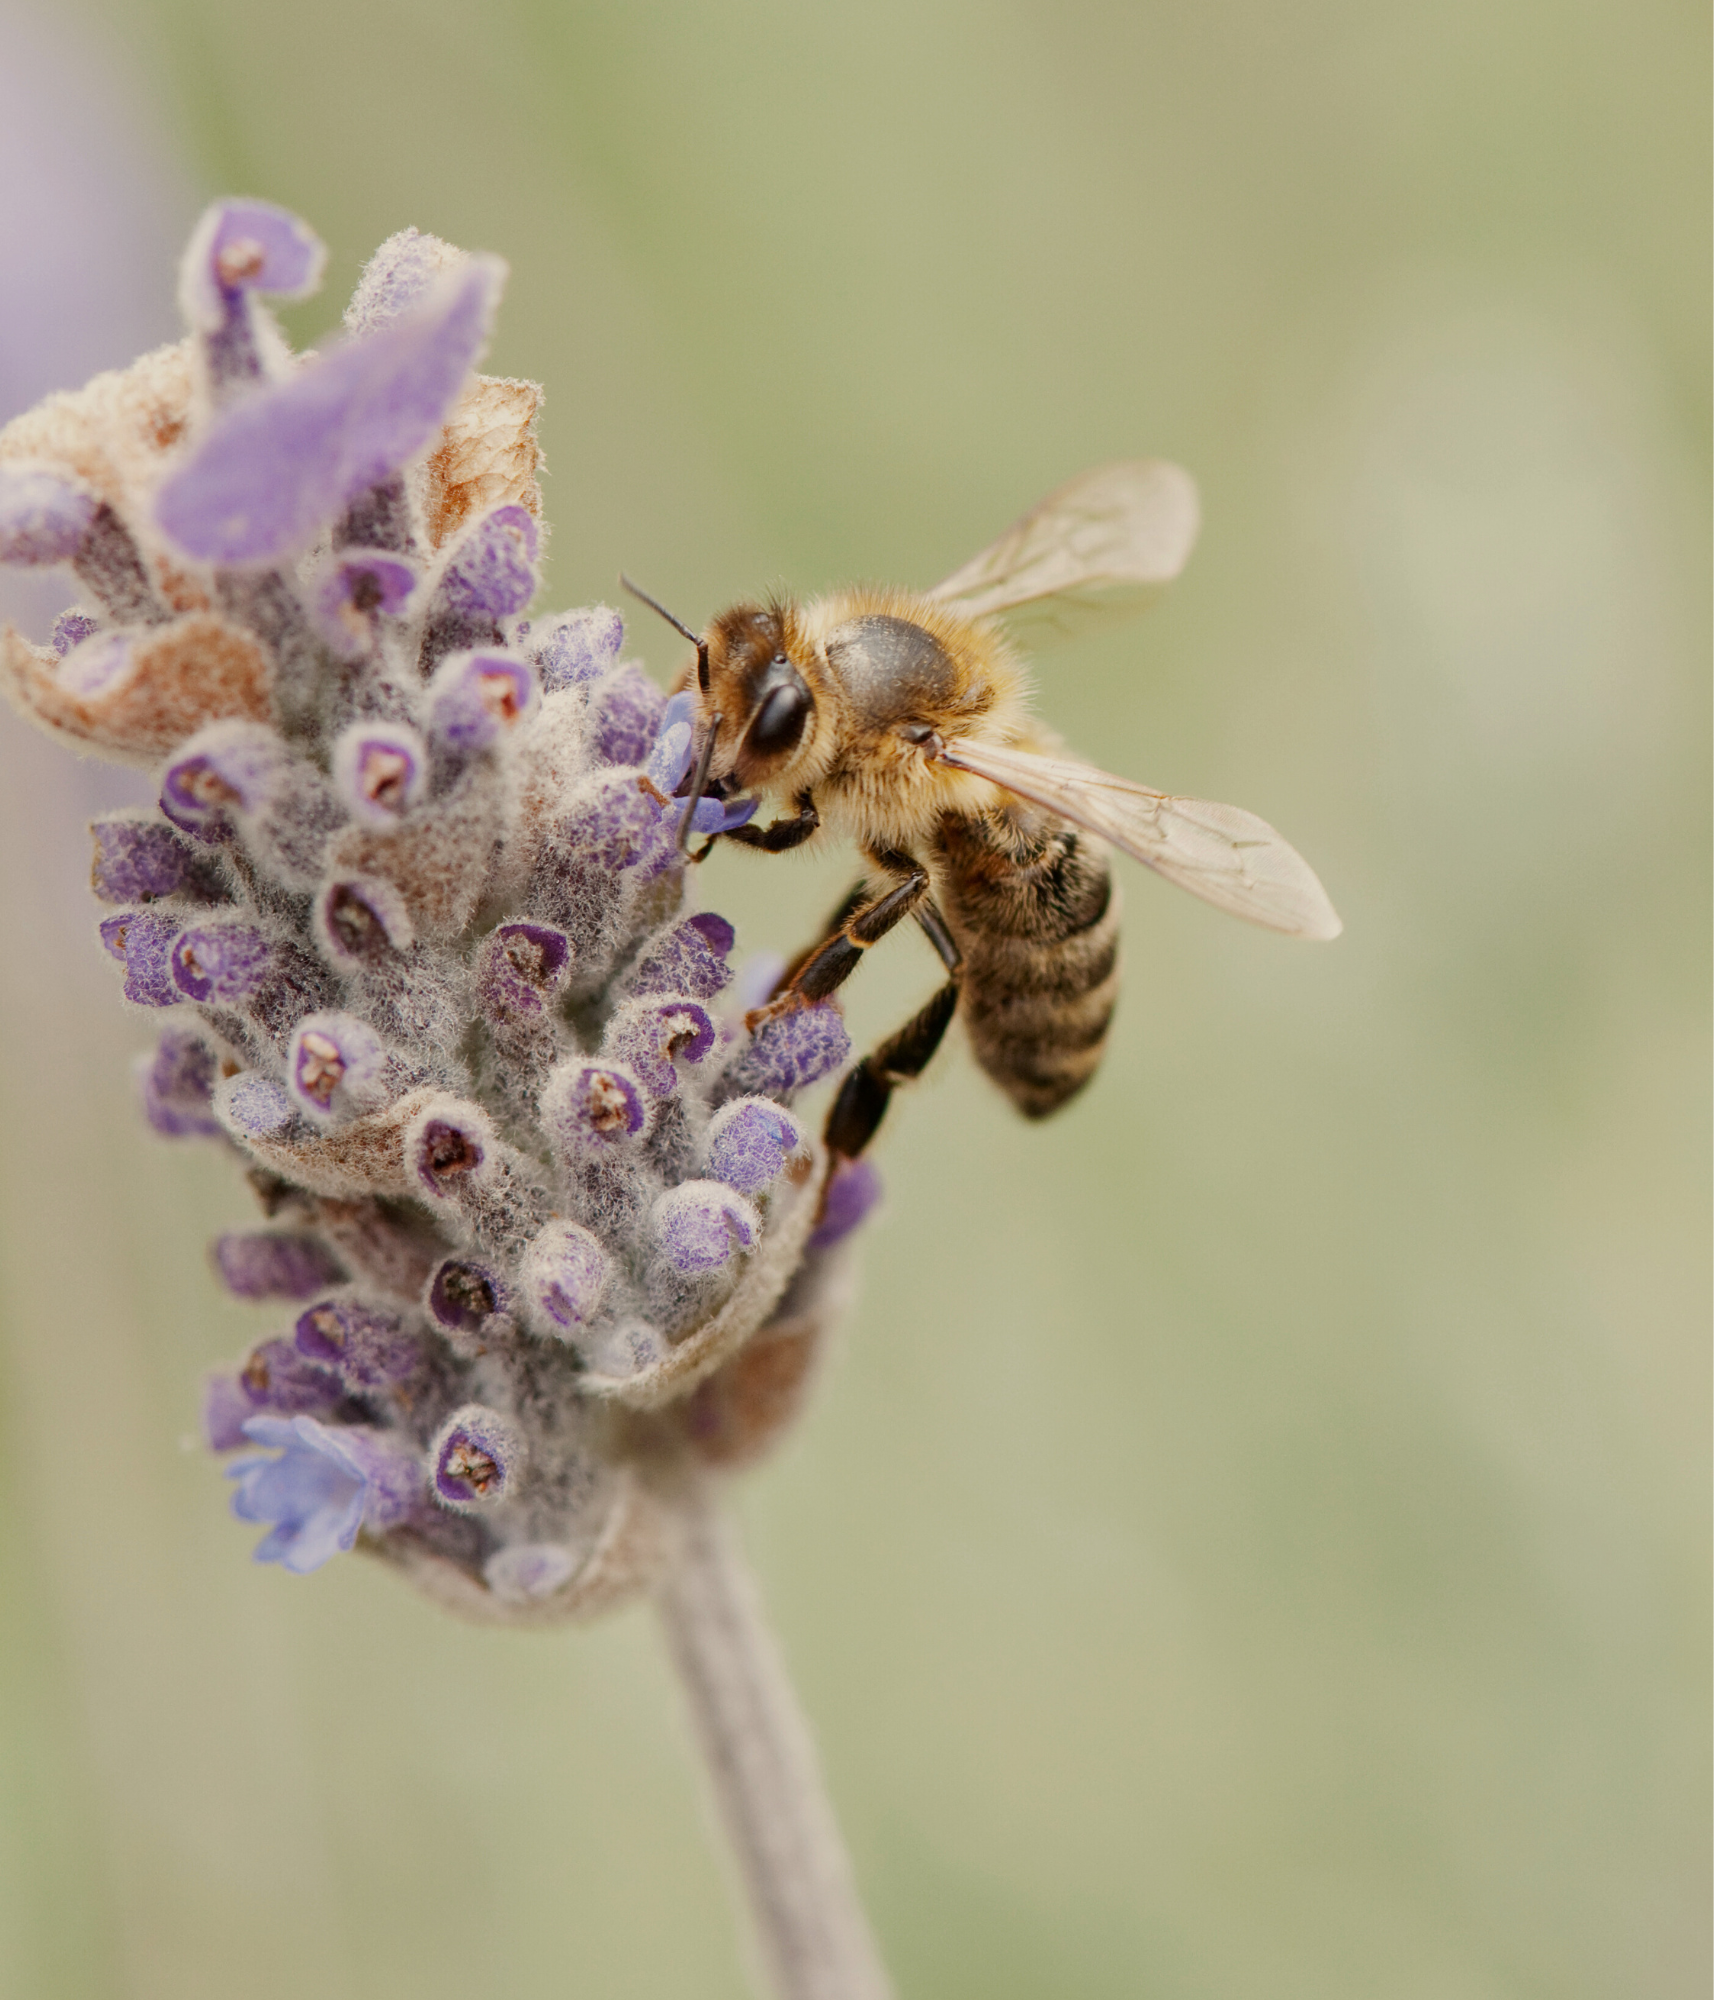 Une abeille butinant une fleur de lavande avec un fond vert clair.